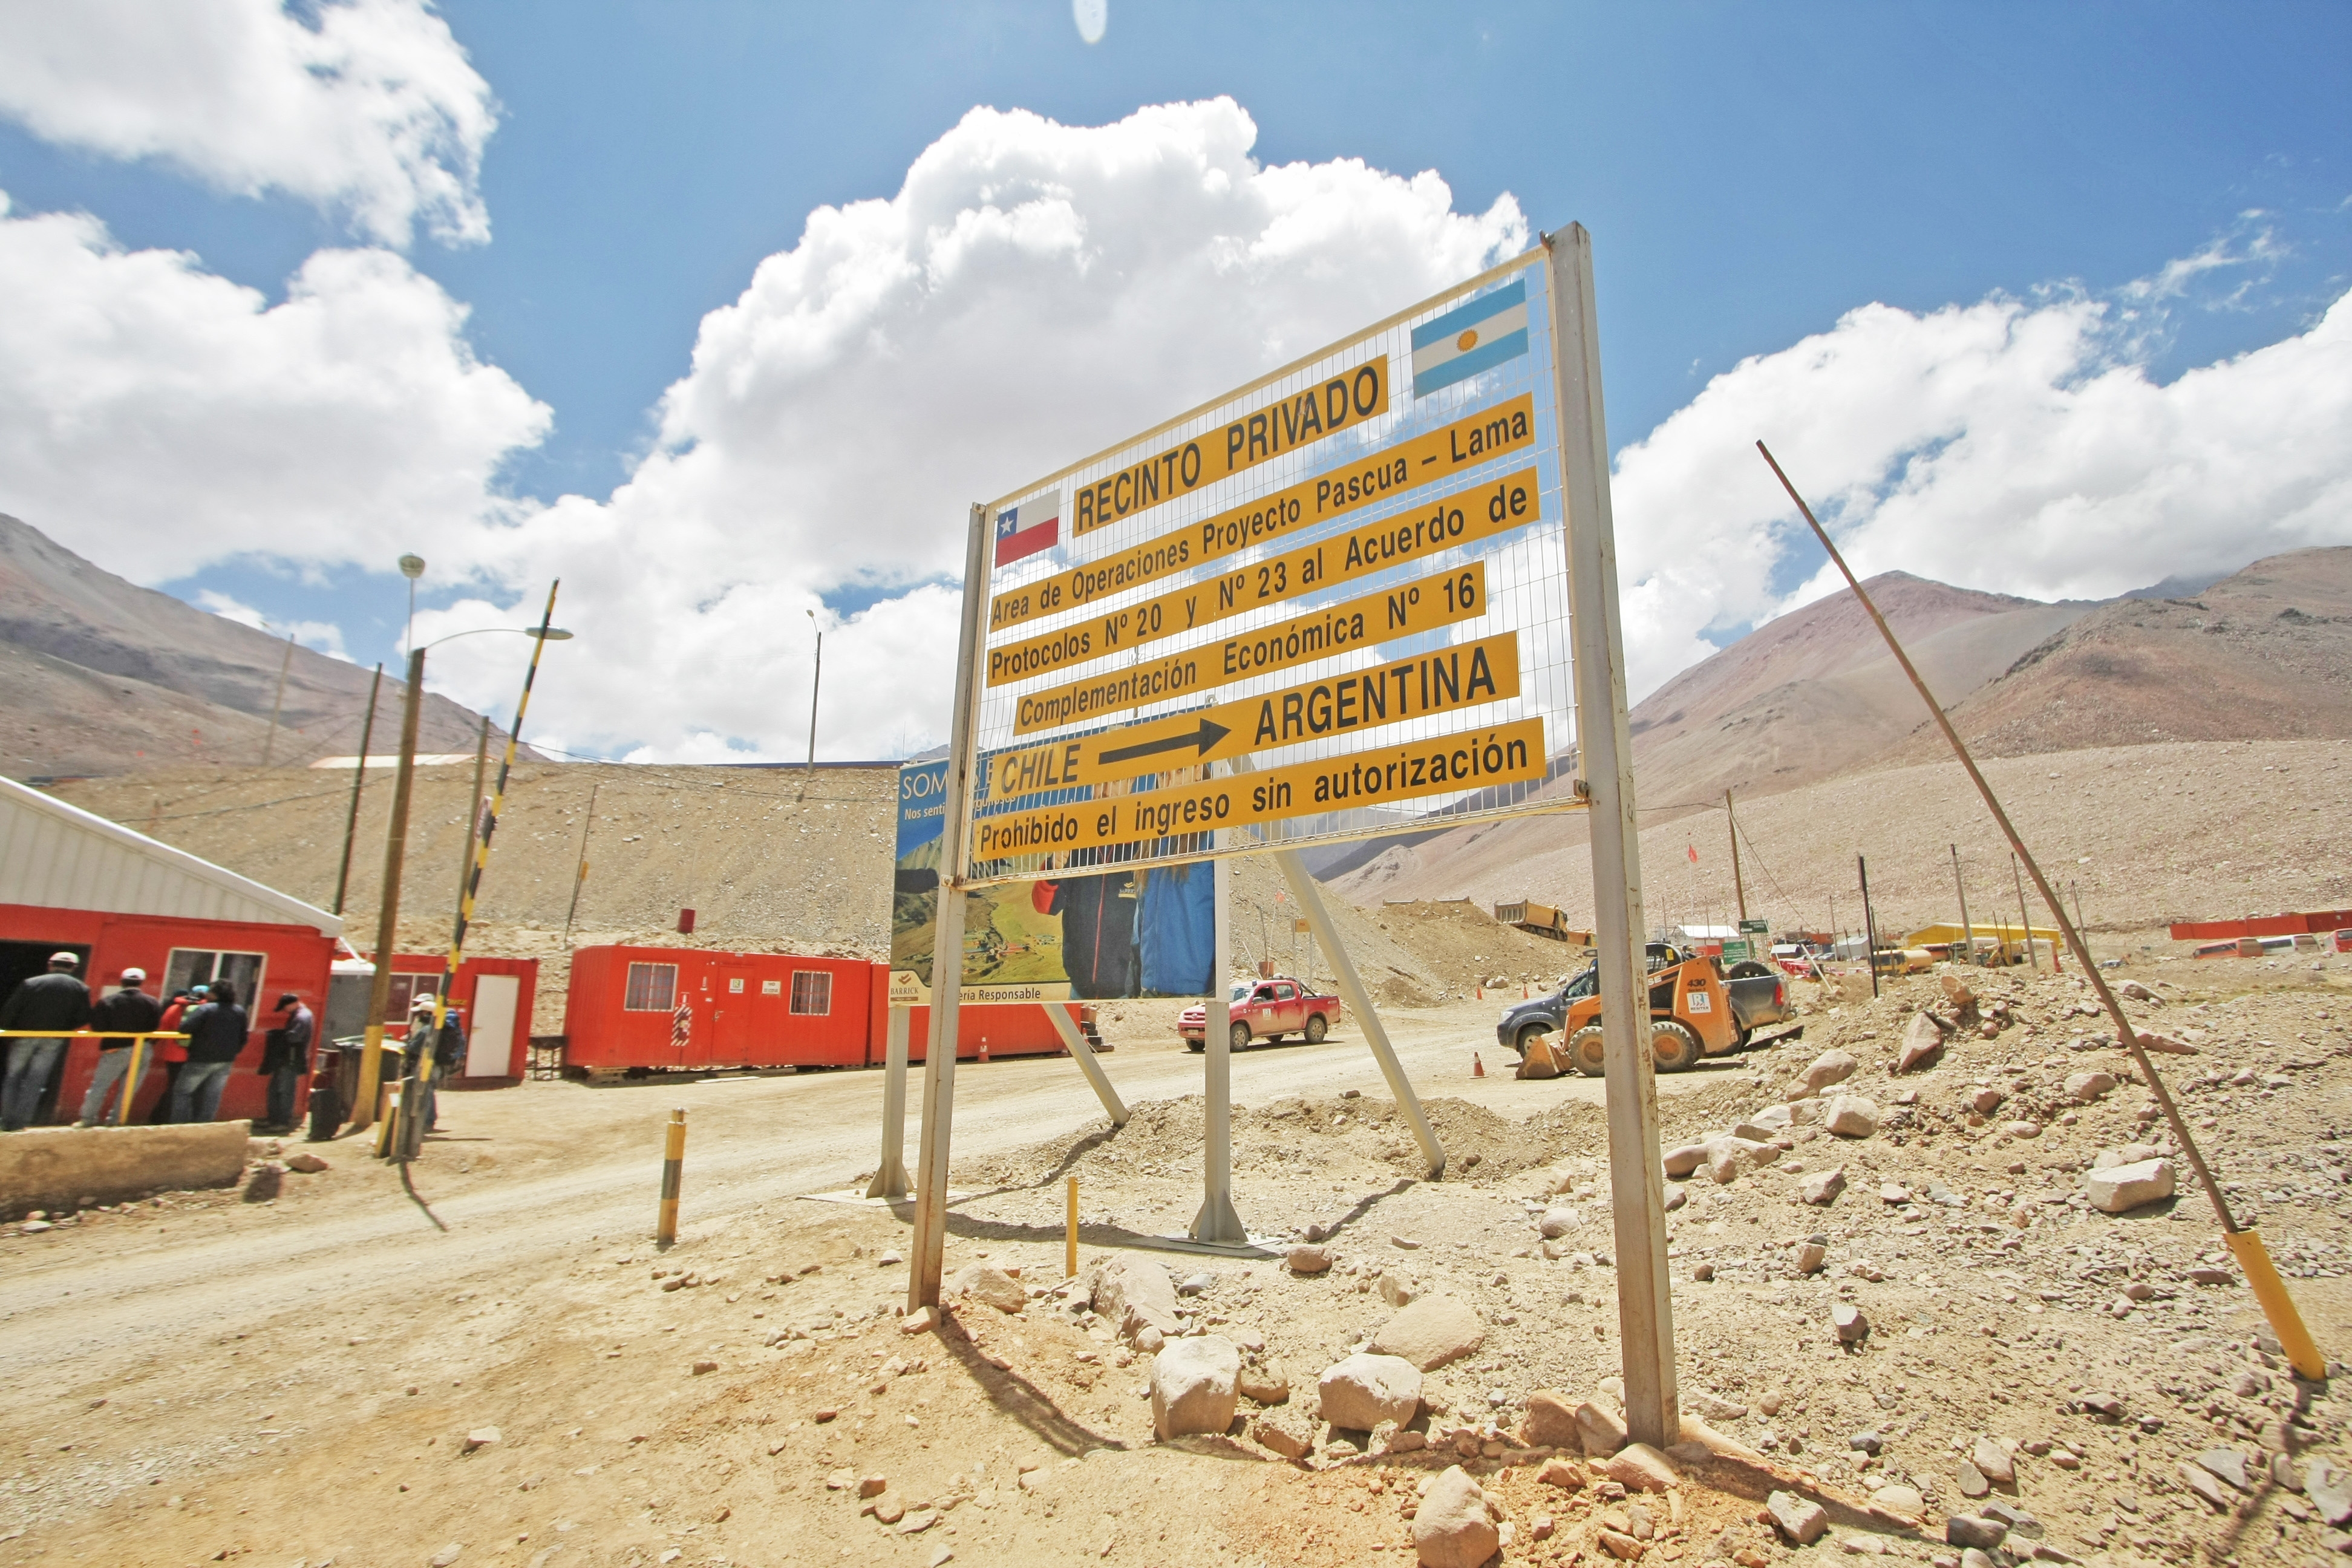 Il tribunale cileno chiude definitivamente la mega-miniera di Pascua Lama: troppo impattante per l'ambiente